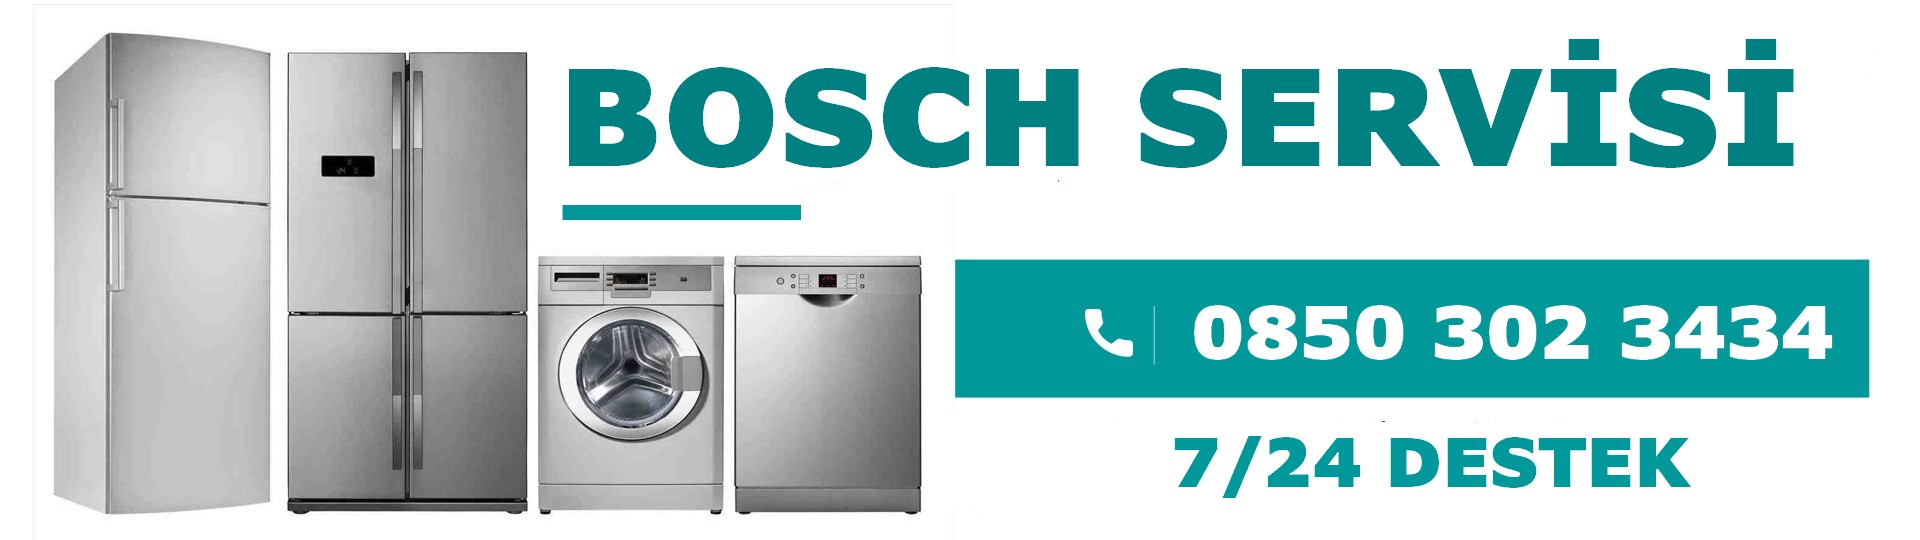 Kula Bosch Servisi